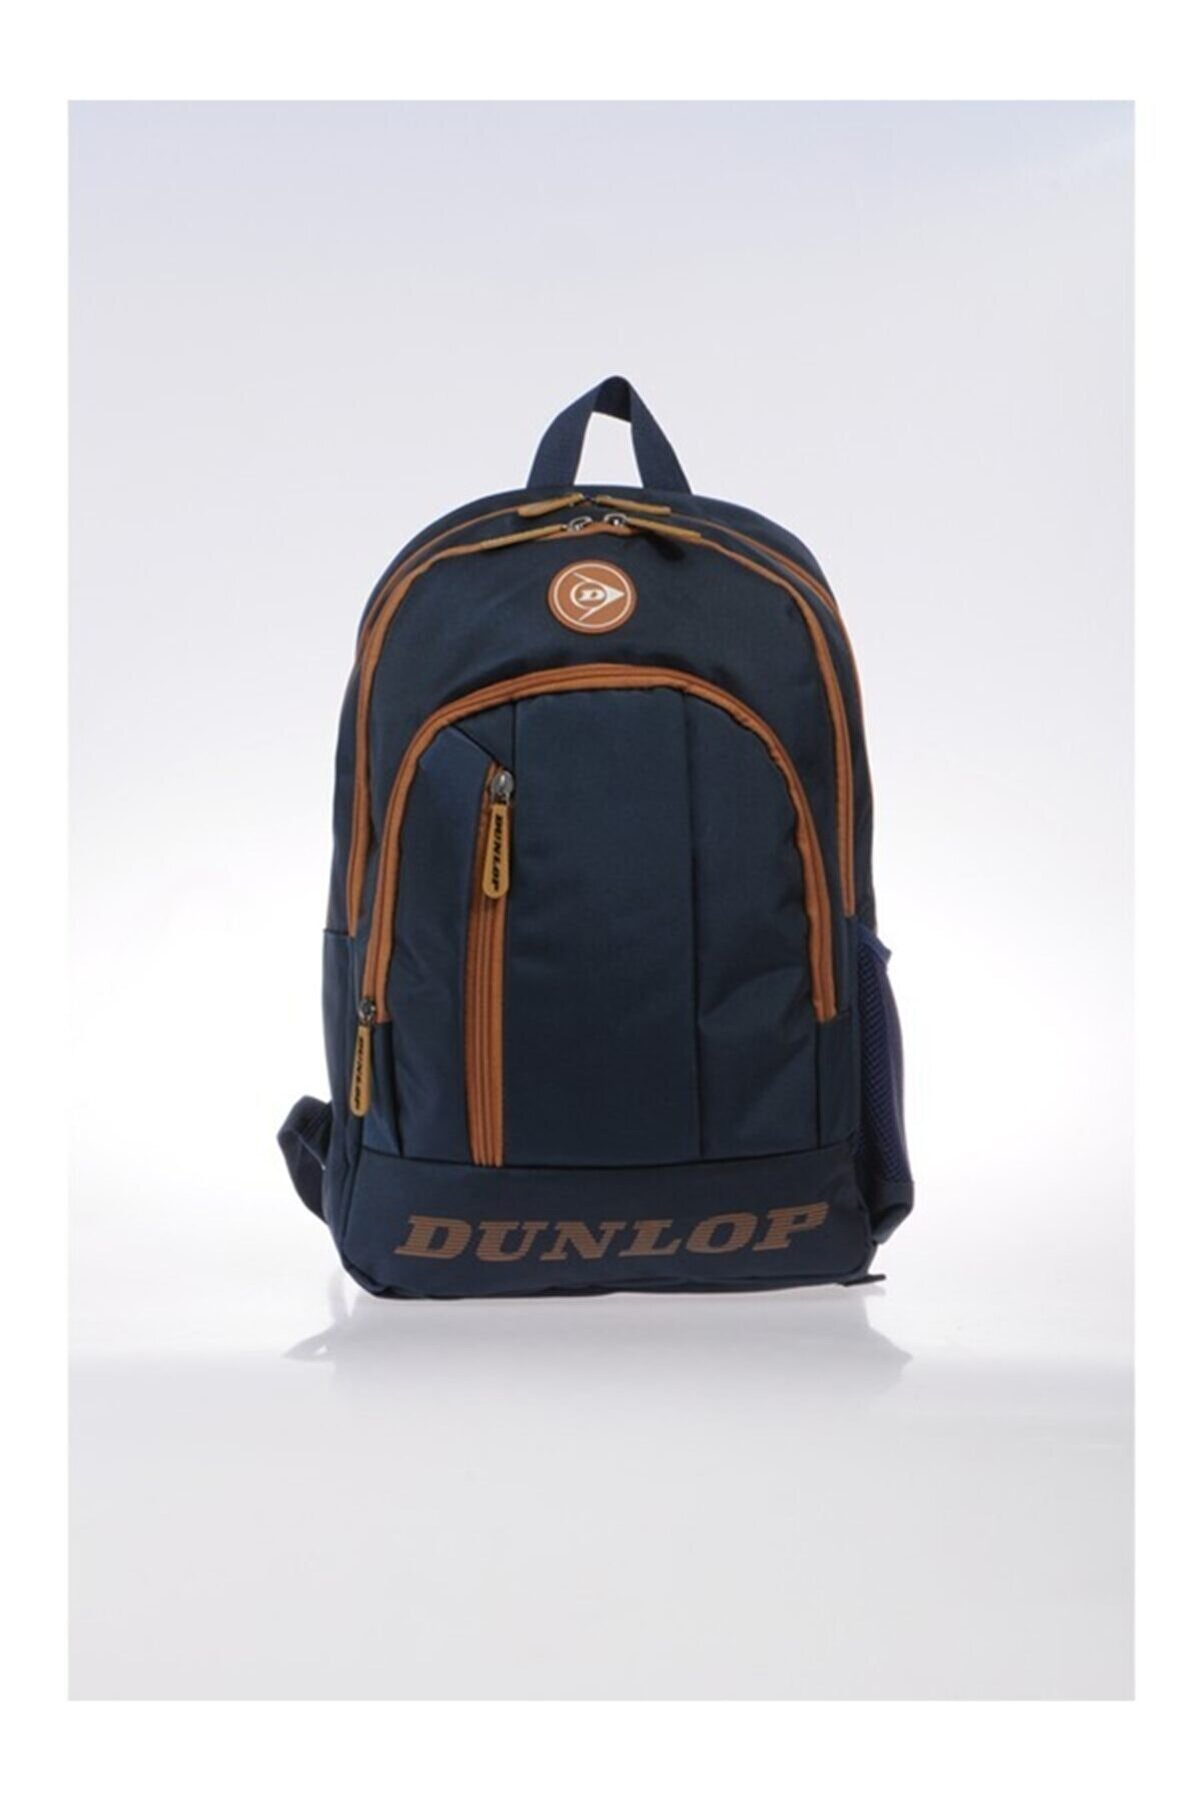 Dunlop Lacivert-kahverengi Sırt Çantası Dpçan9501